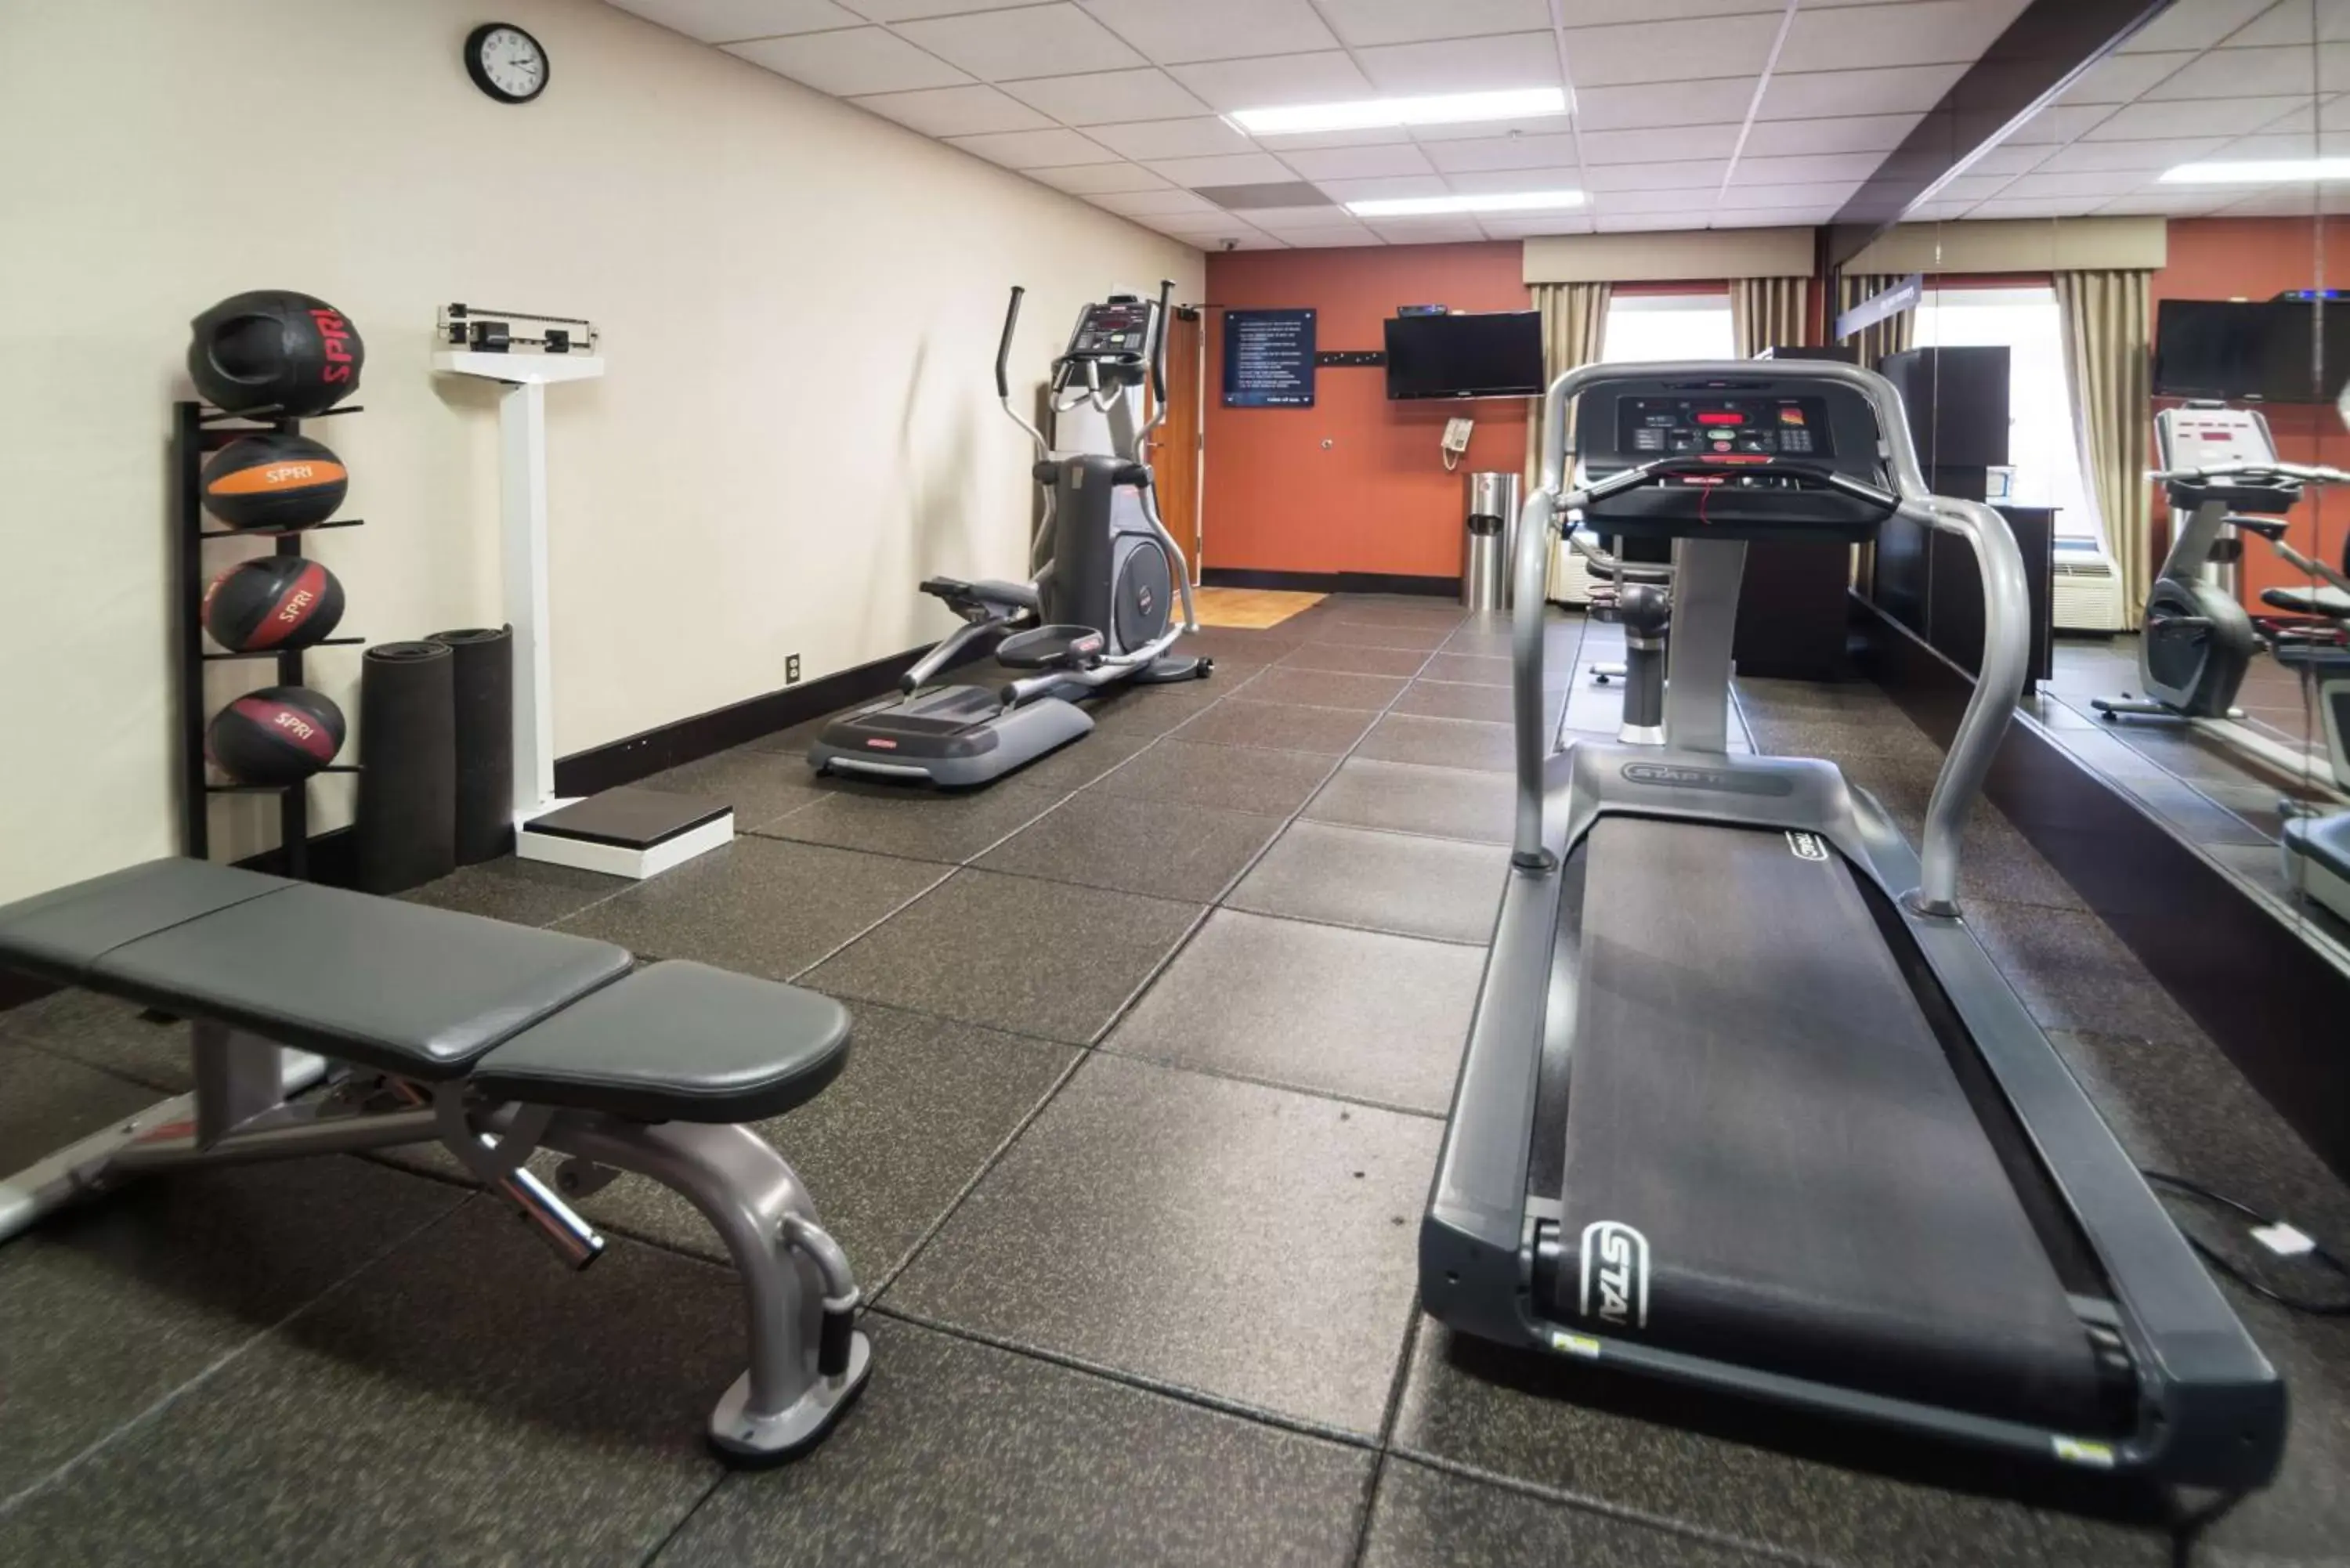 Fitness centre/facilities, Fitness Center/Facilities in Hampton Inn Tulsa/Broken Arrow